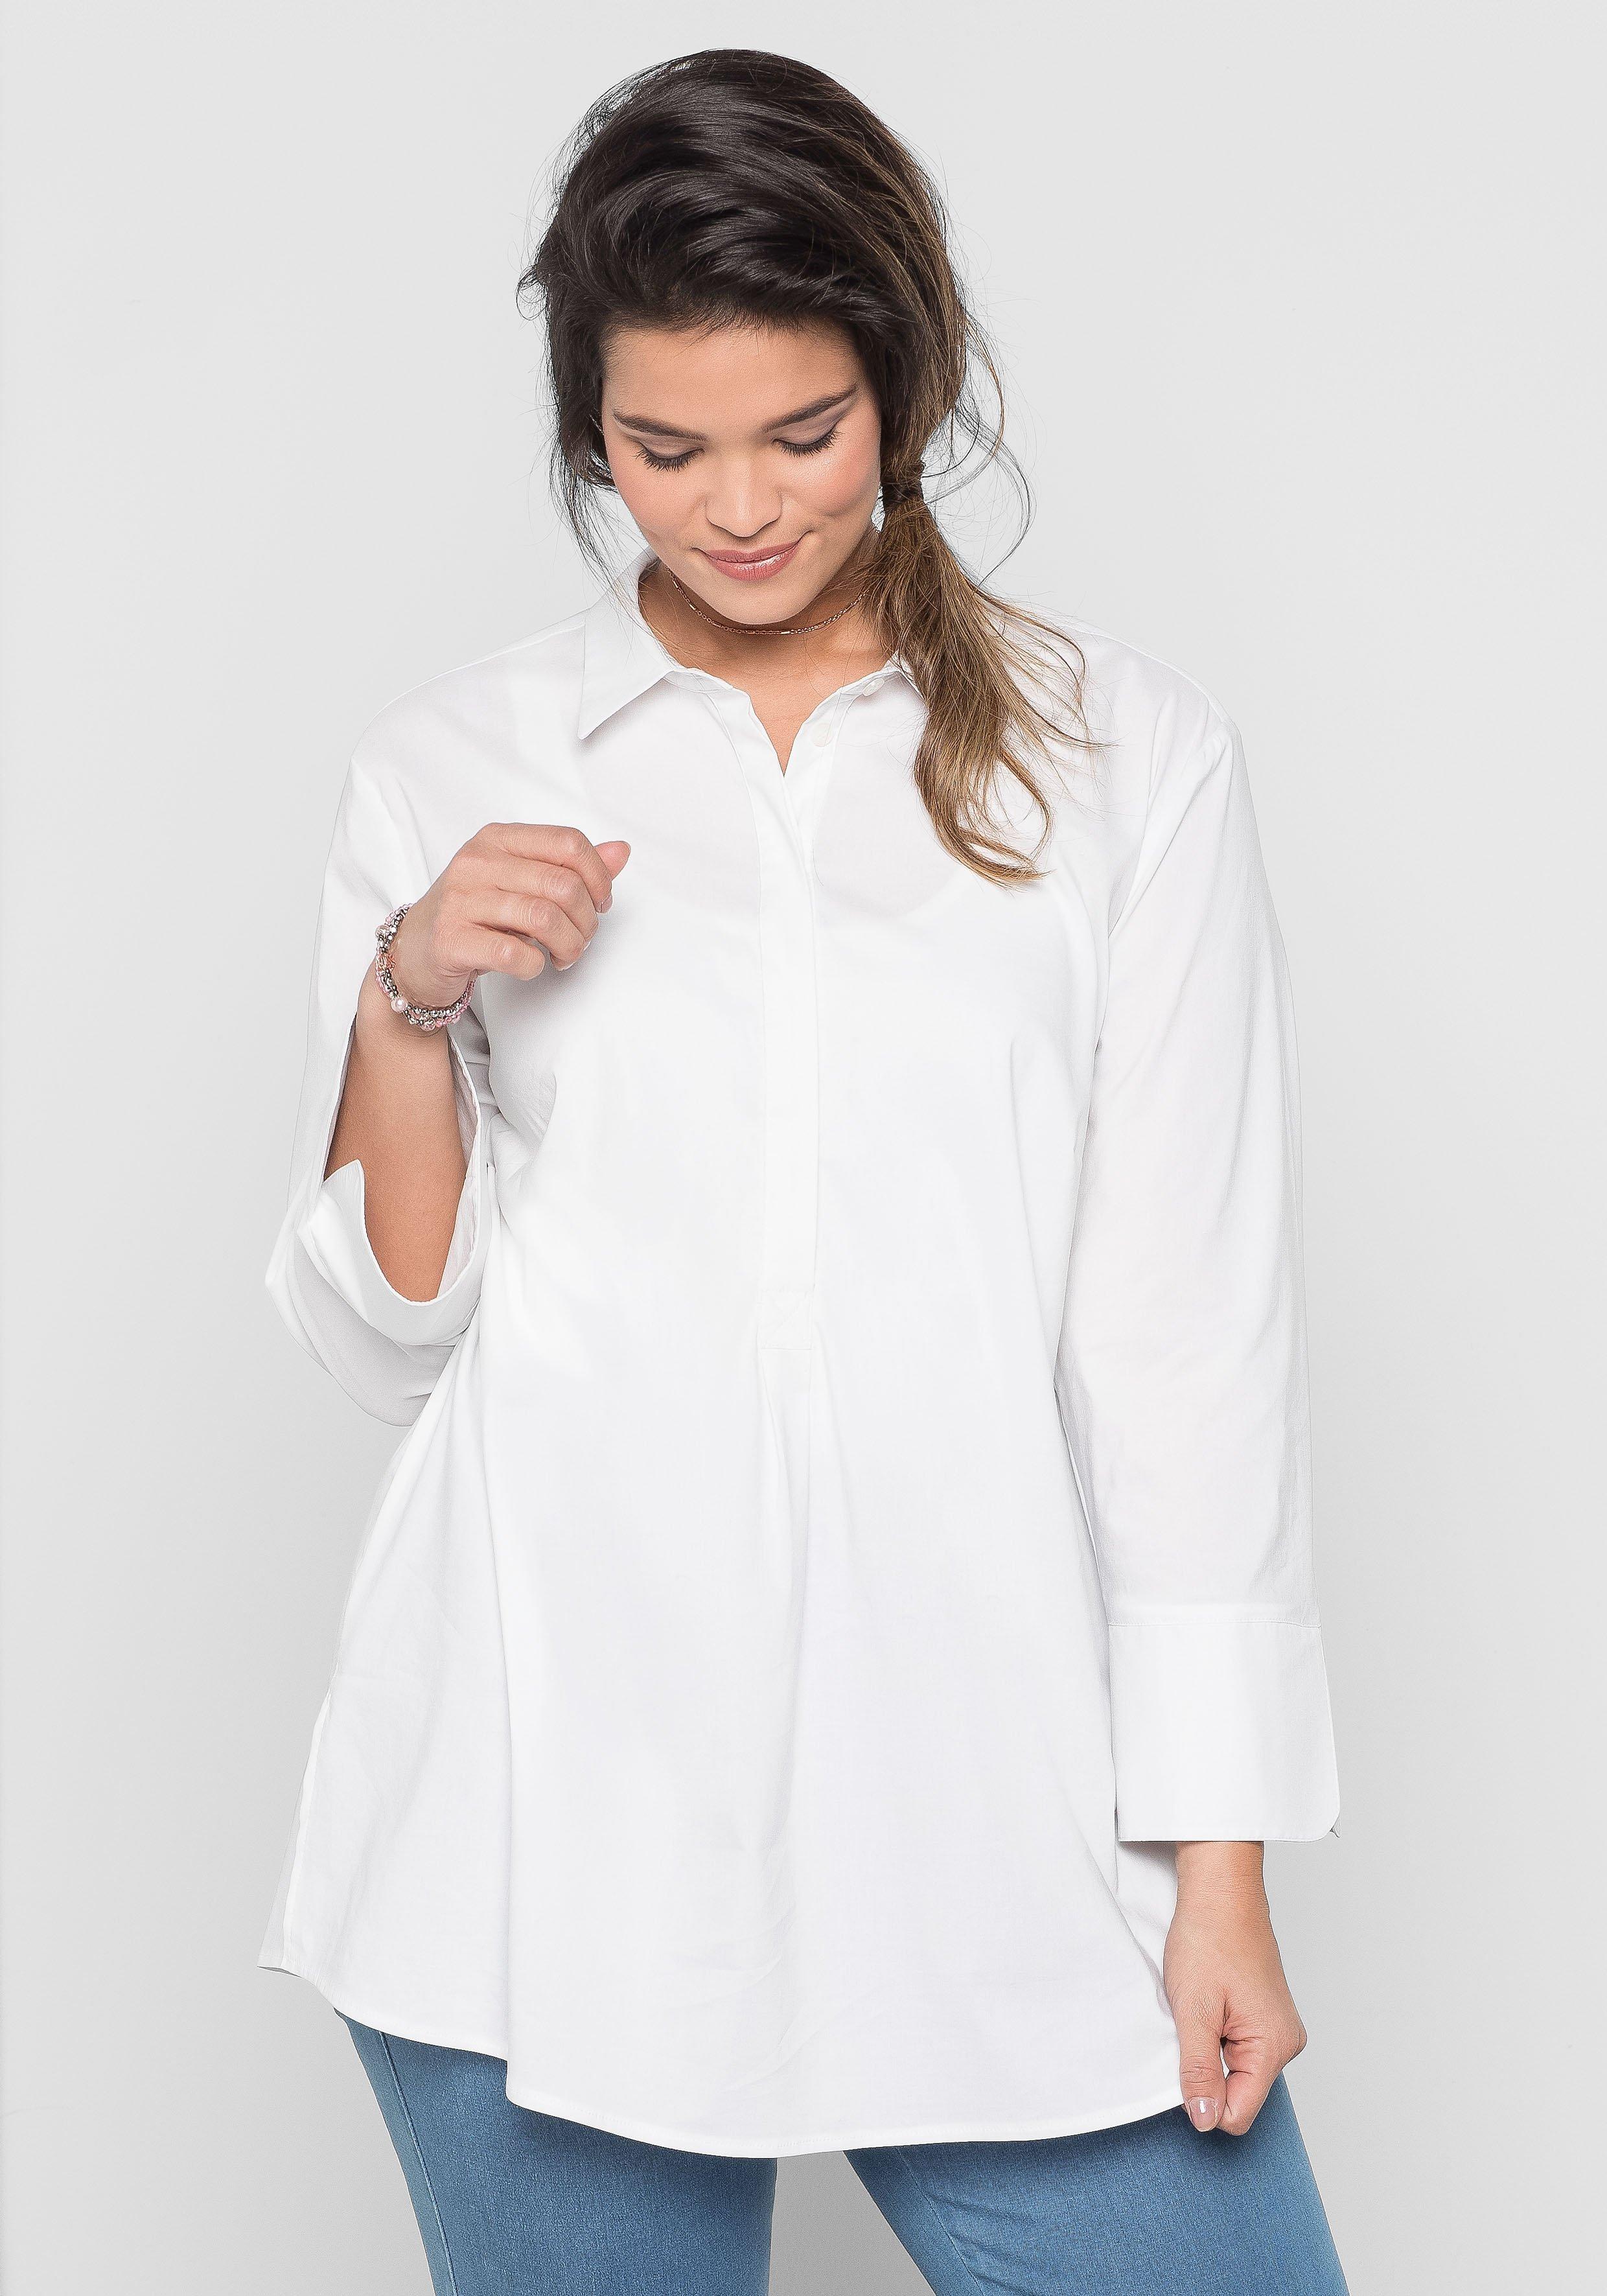 Blusen & Tuniken große Größen weiß › Größe 58 | sheego ♥ Plus Size Mode